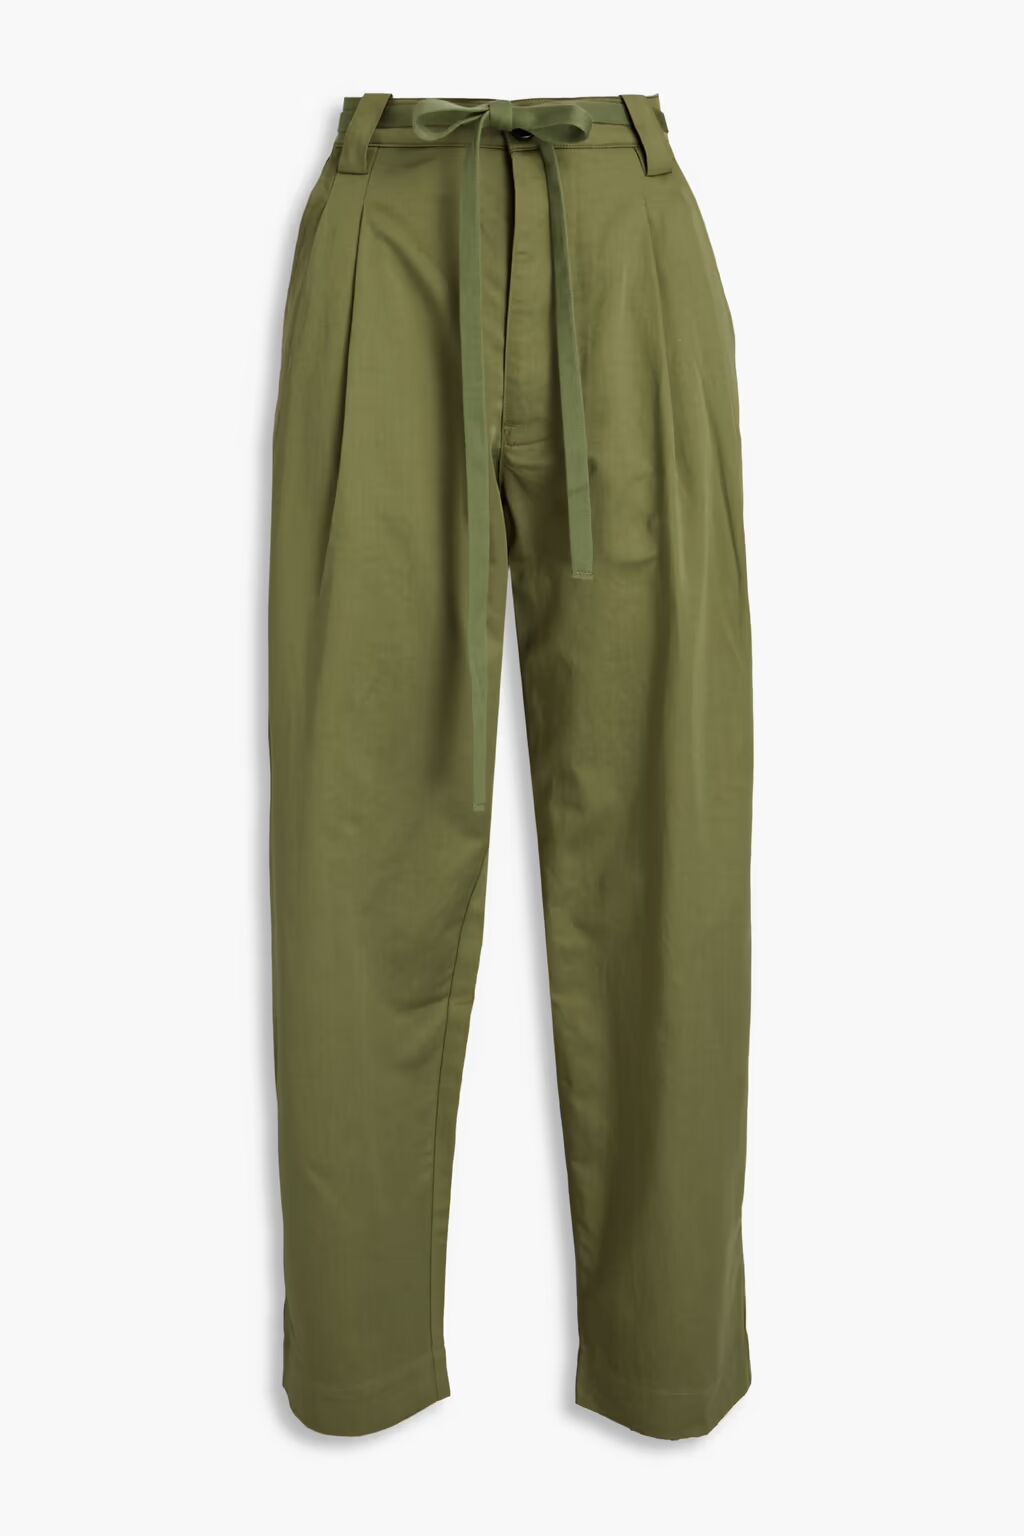 Alma зауженные брюки со складками из хлопка и льна A.L.C., армейский зеленый